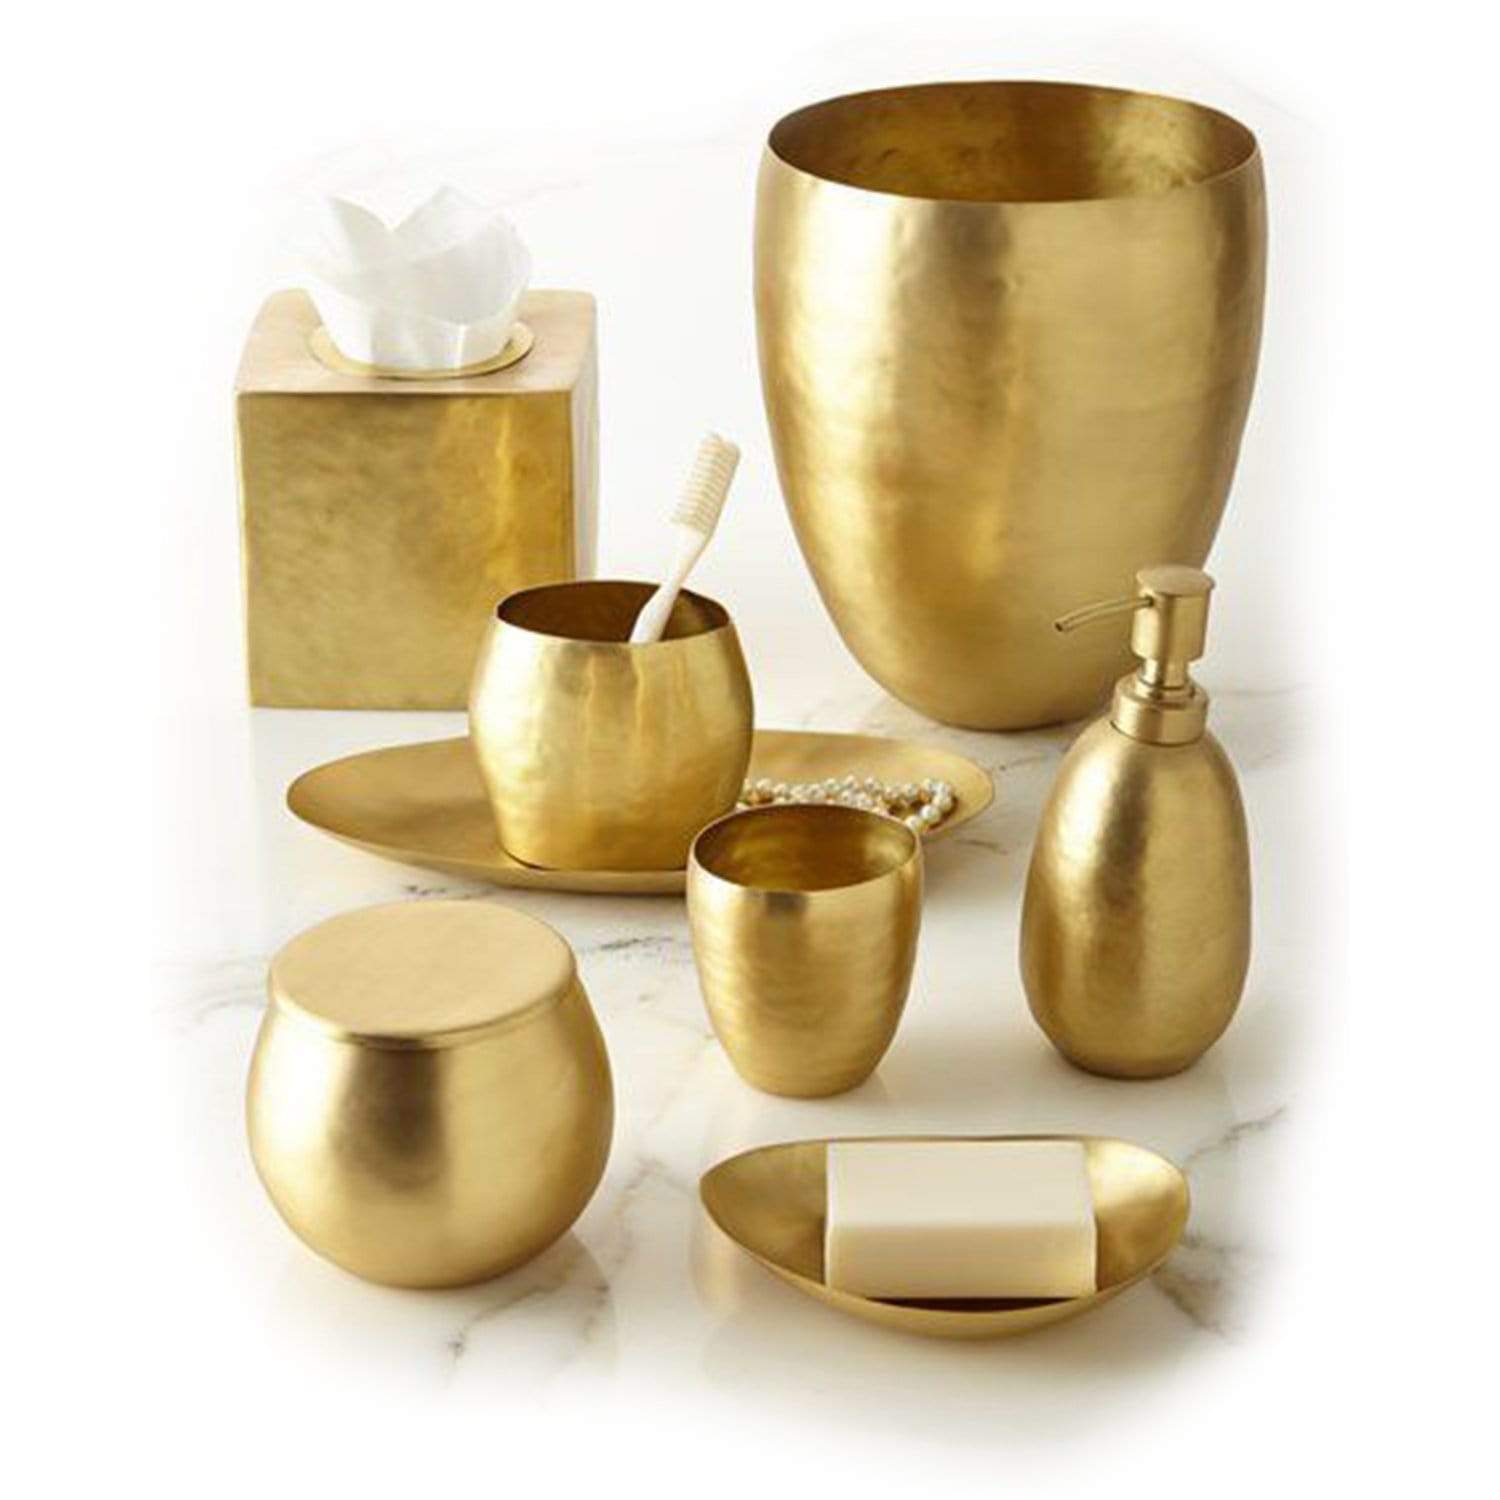 Kassatex Nile Brass Tray - Gold - ANL-TR - Jashanmal Home